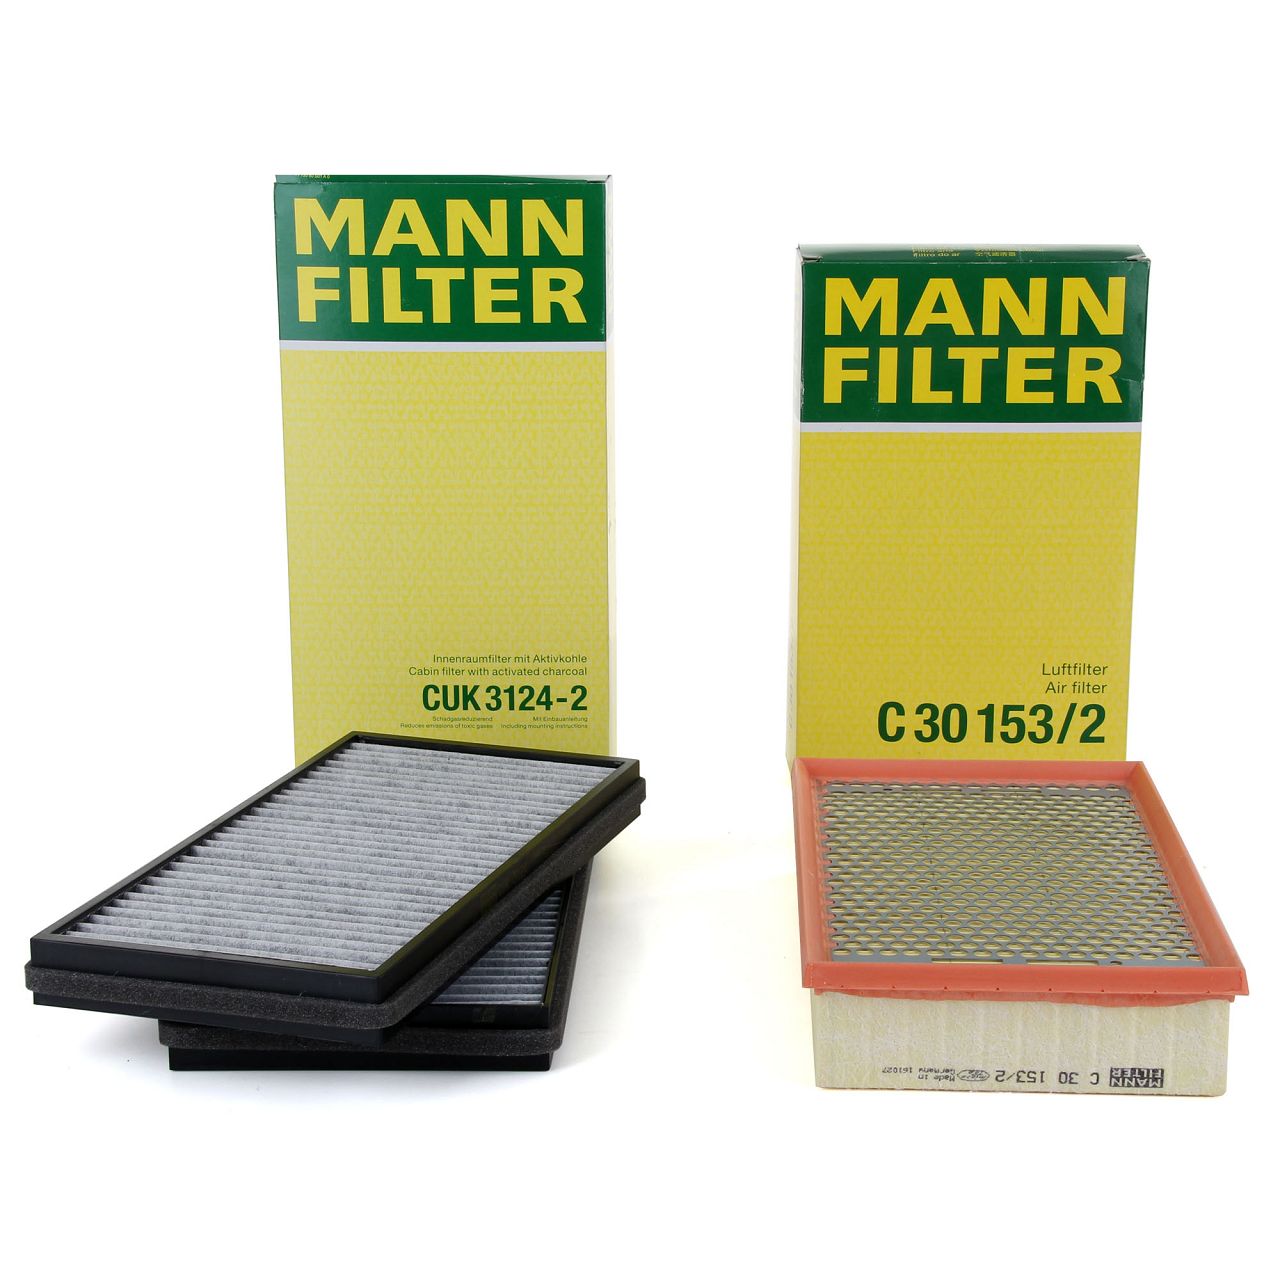 MANN Filterset Innenraum + Luftfilter BMW 7er E65 E66 E67 730i 730Li M54 231 PS